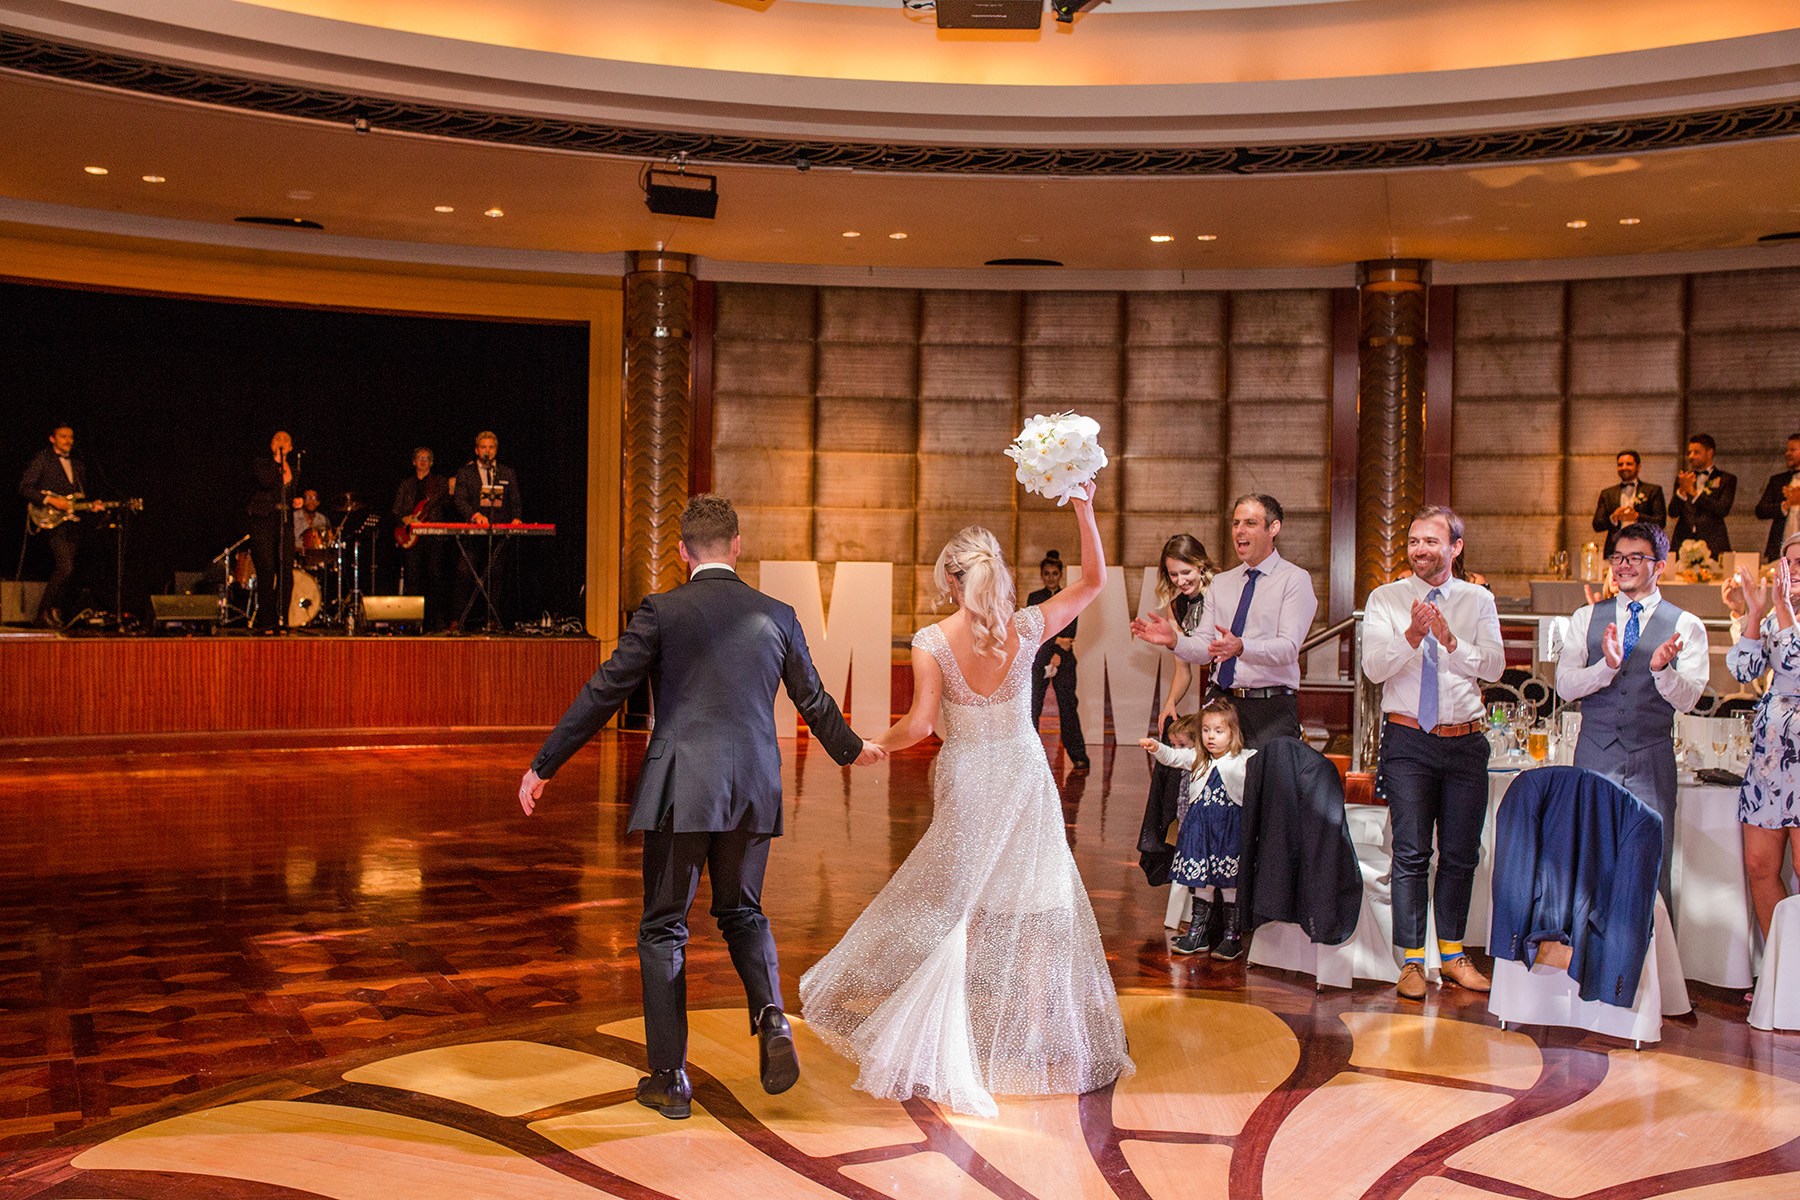 Real Wedding in Ballroom at Park Hyatt Melbourne hotel